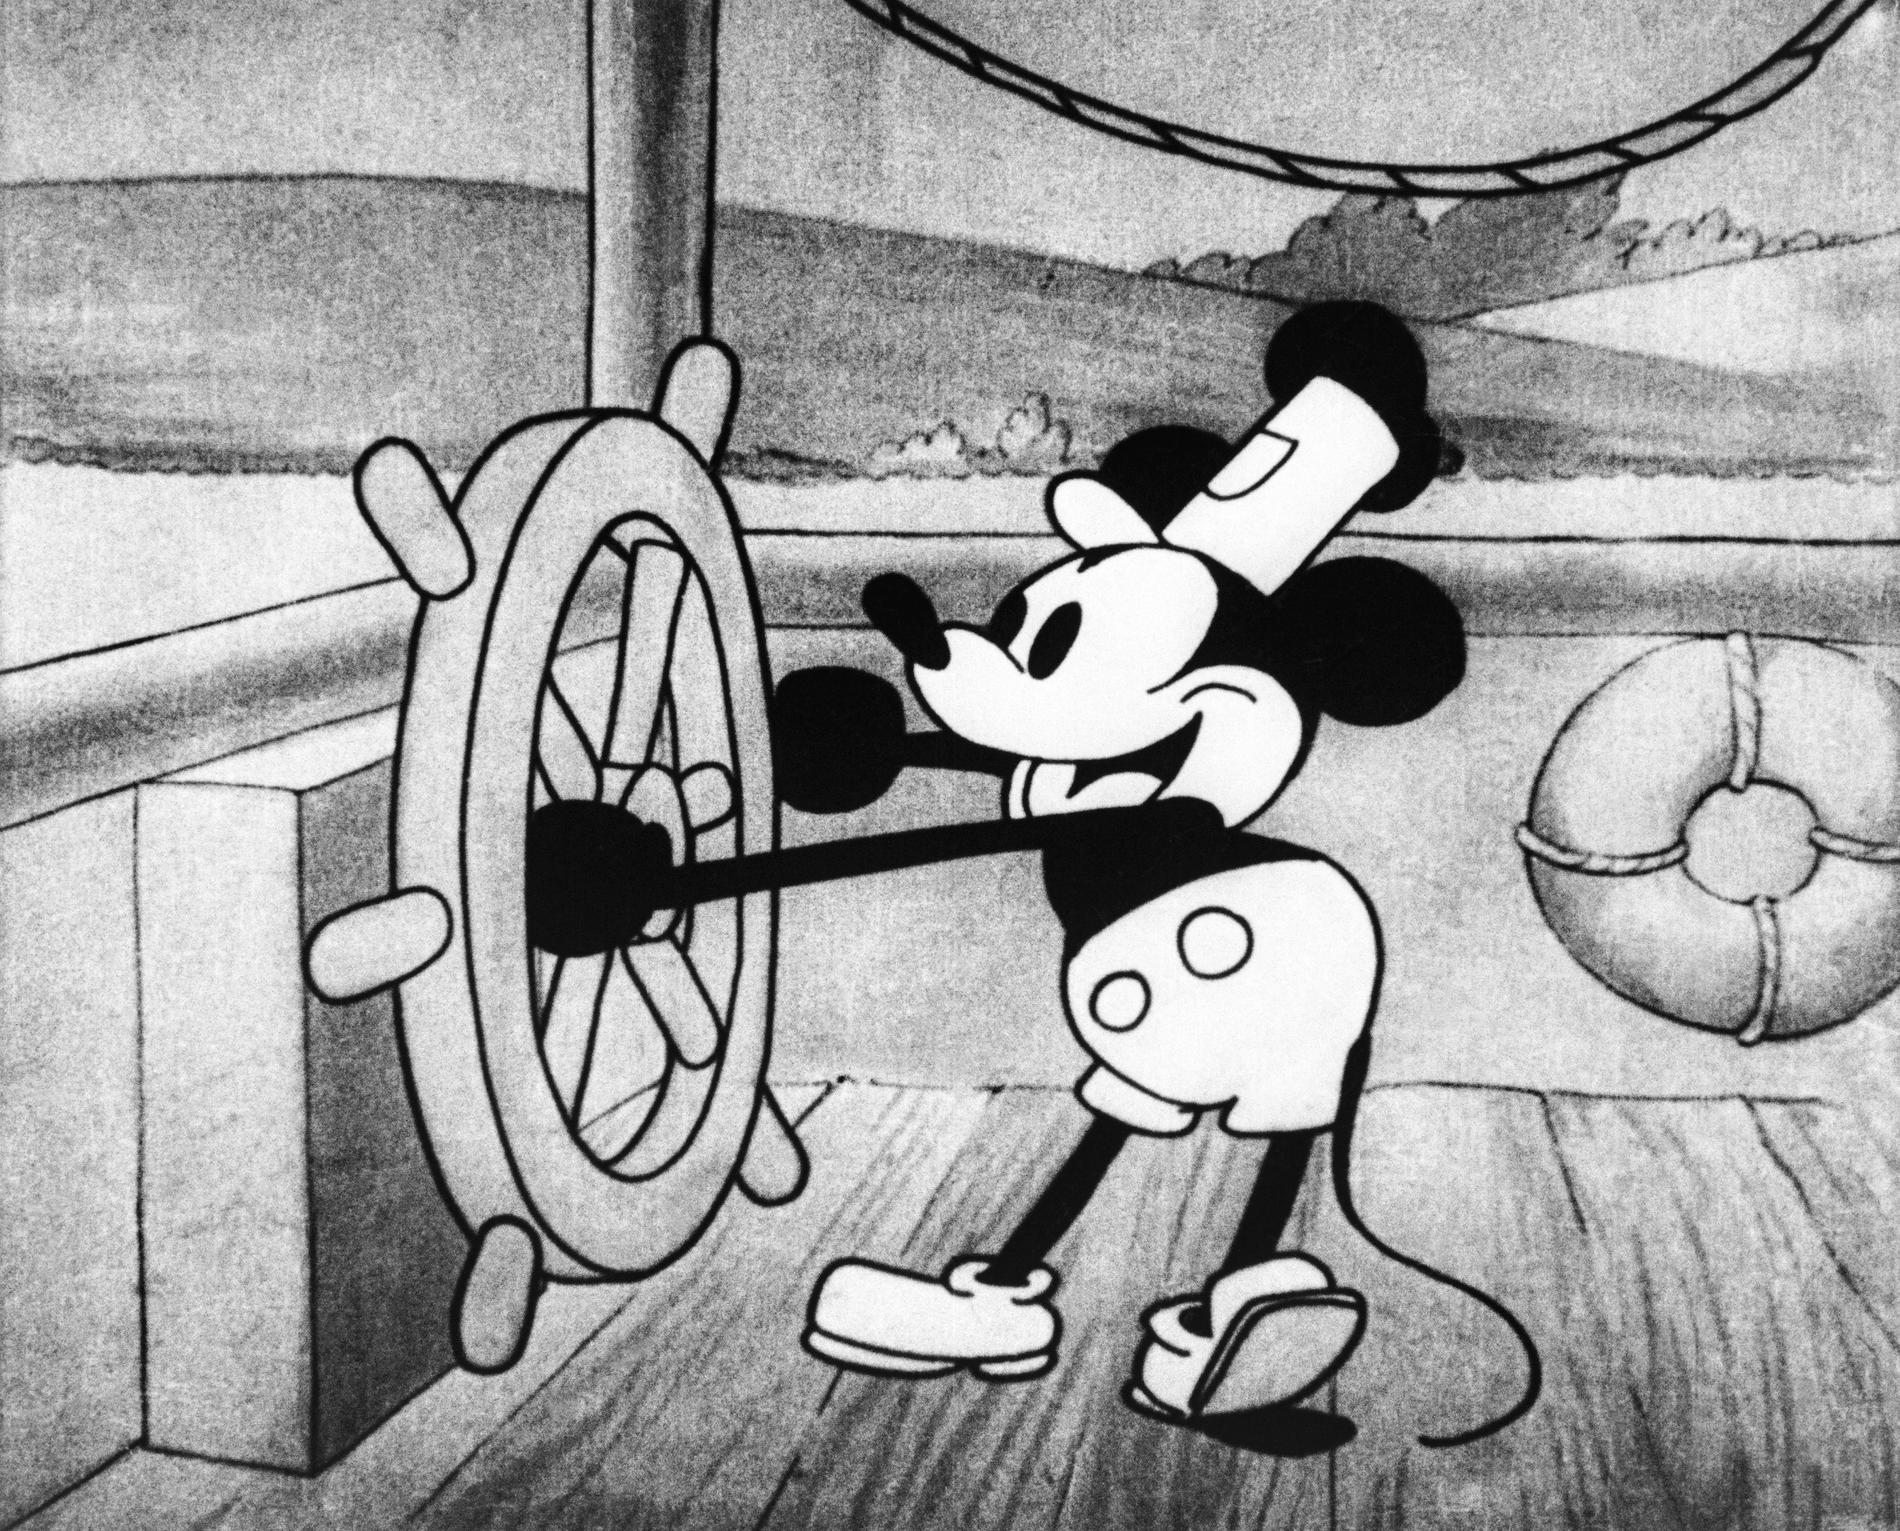 Musse Pigg introducerades första gången i den åtta minuter långa, svartvita filmen "Musse Pigg som Ångbåtskalle" från 1928. Arkivbild.